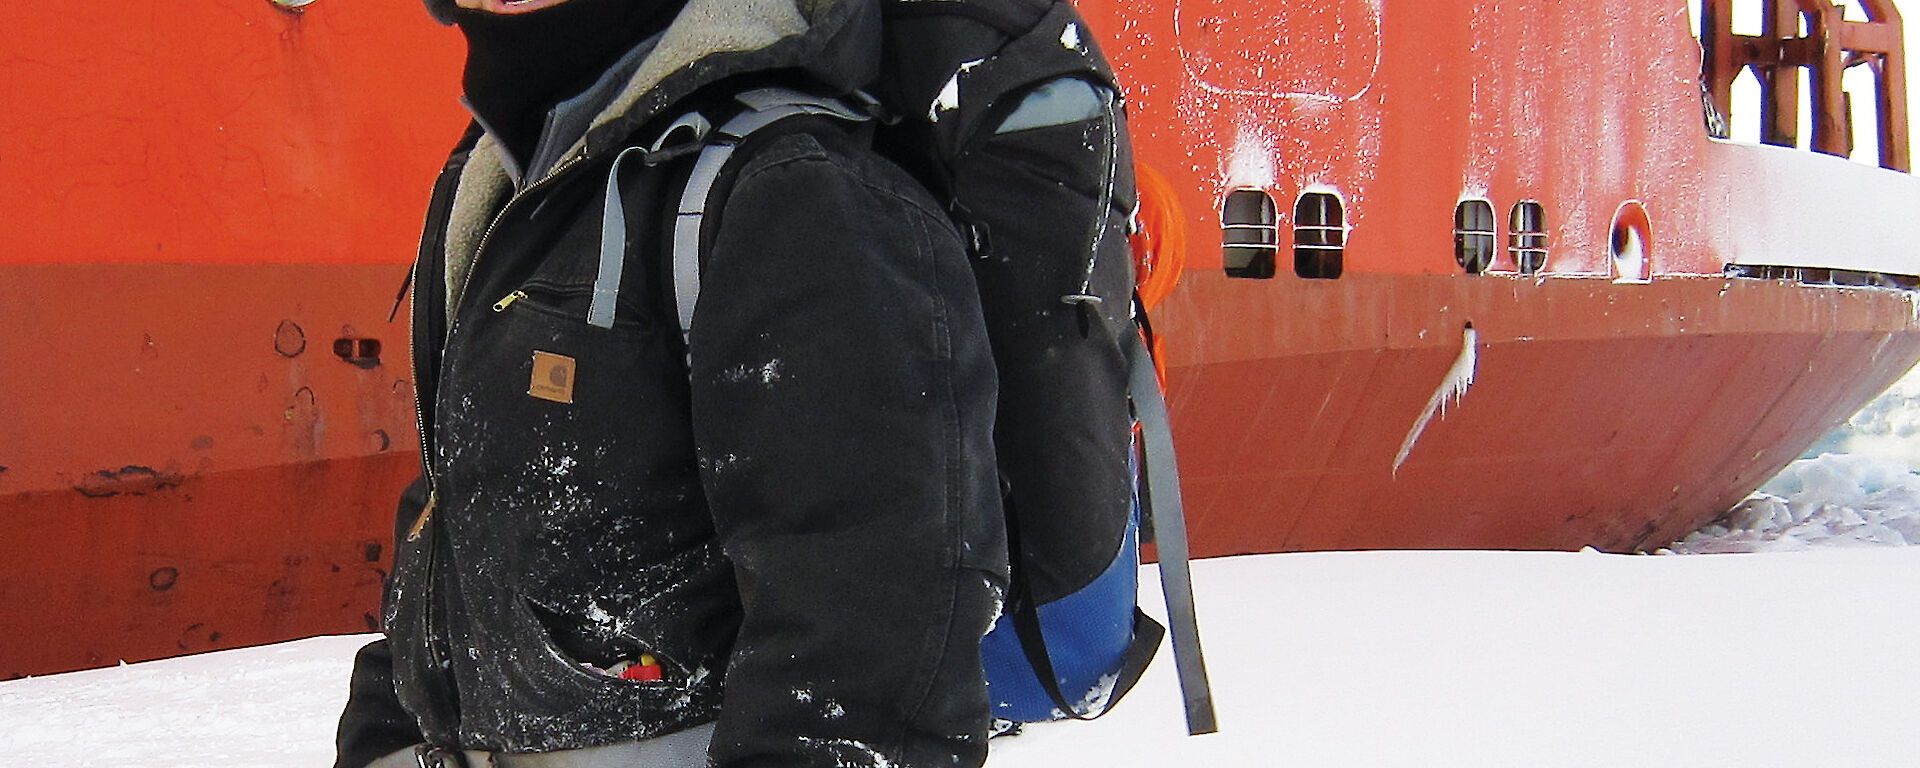 Aaron Spurr in Antarctica